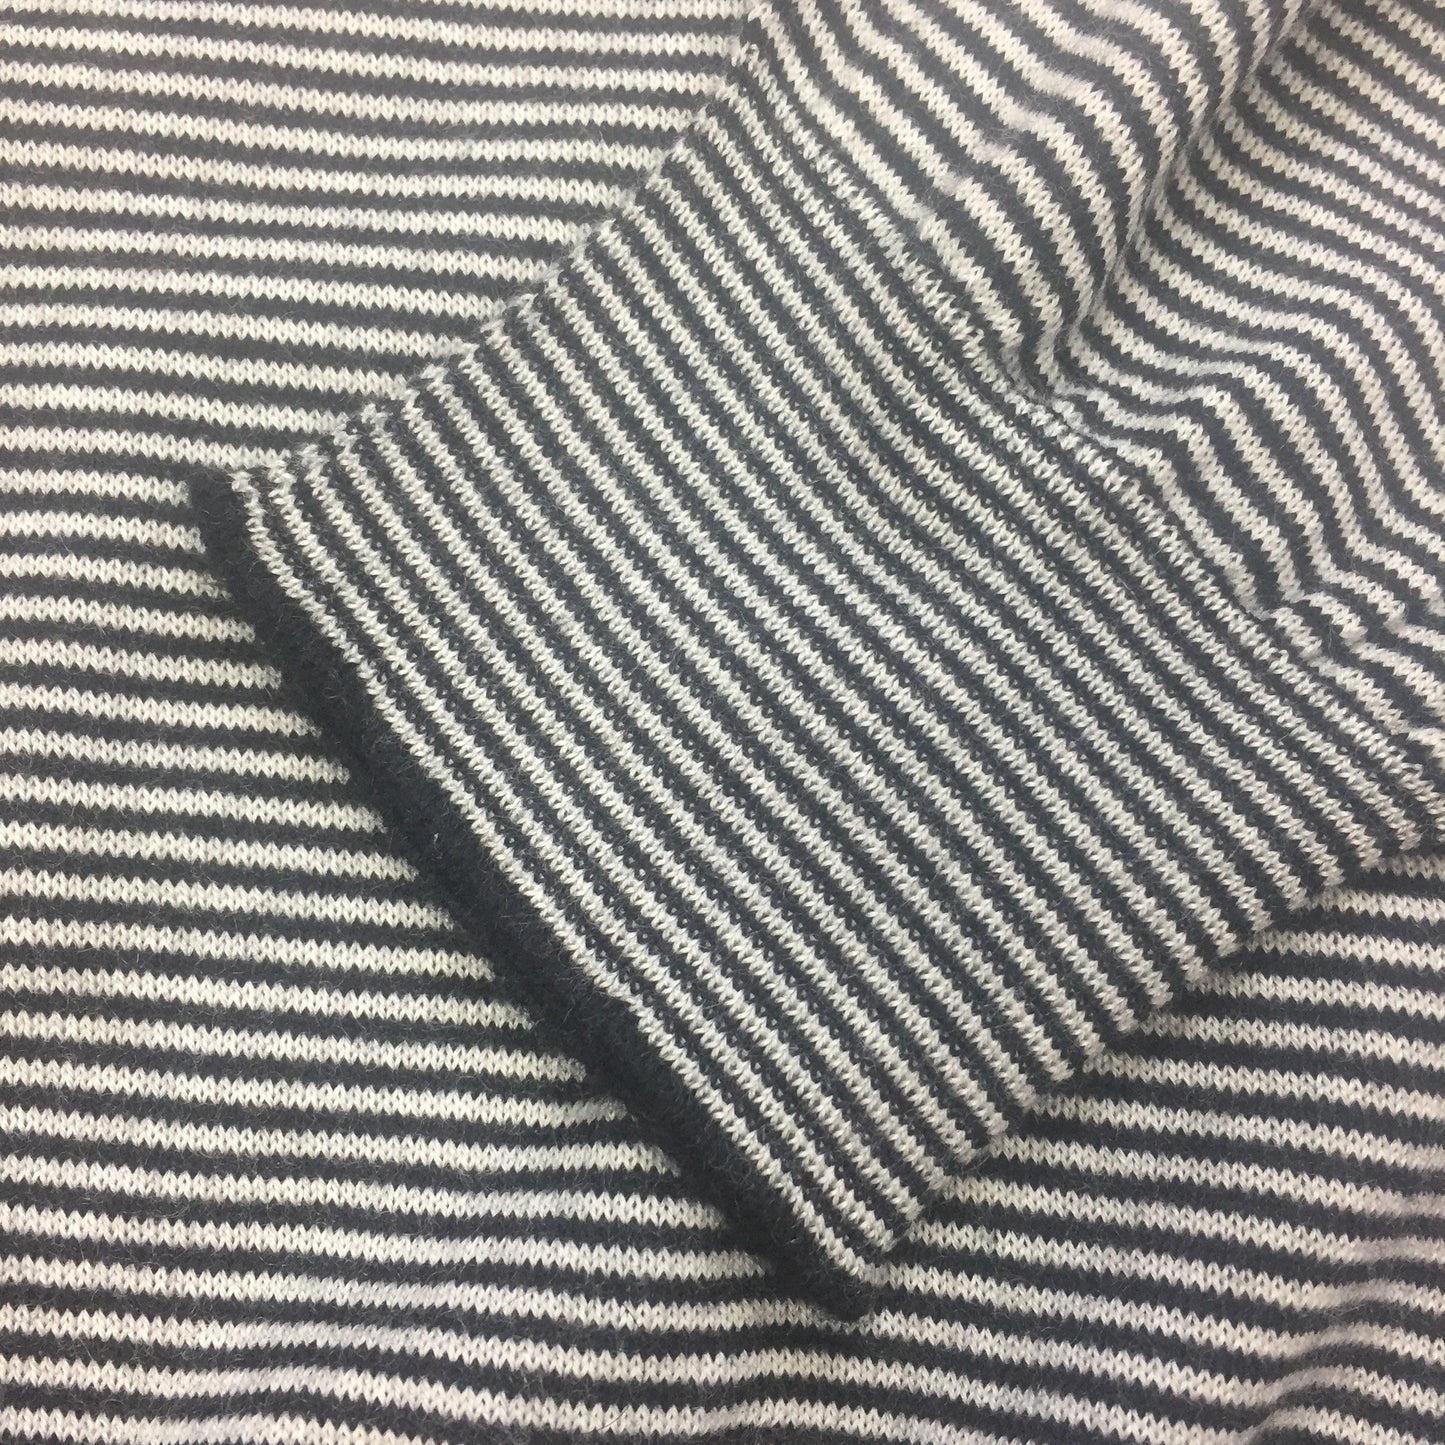 Balenciaga - 100% Cashmere Striped Turtle Neck Sweater